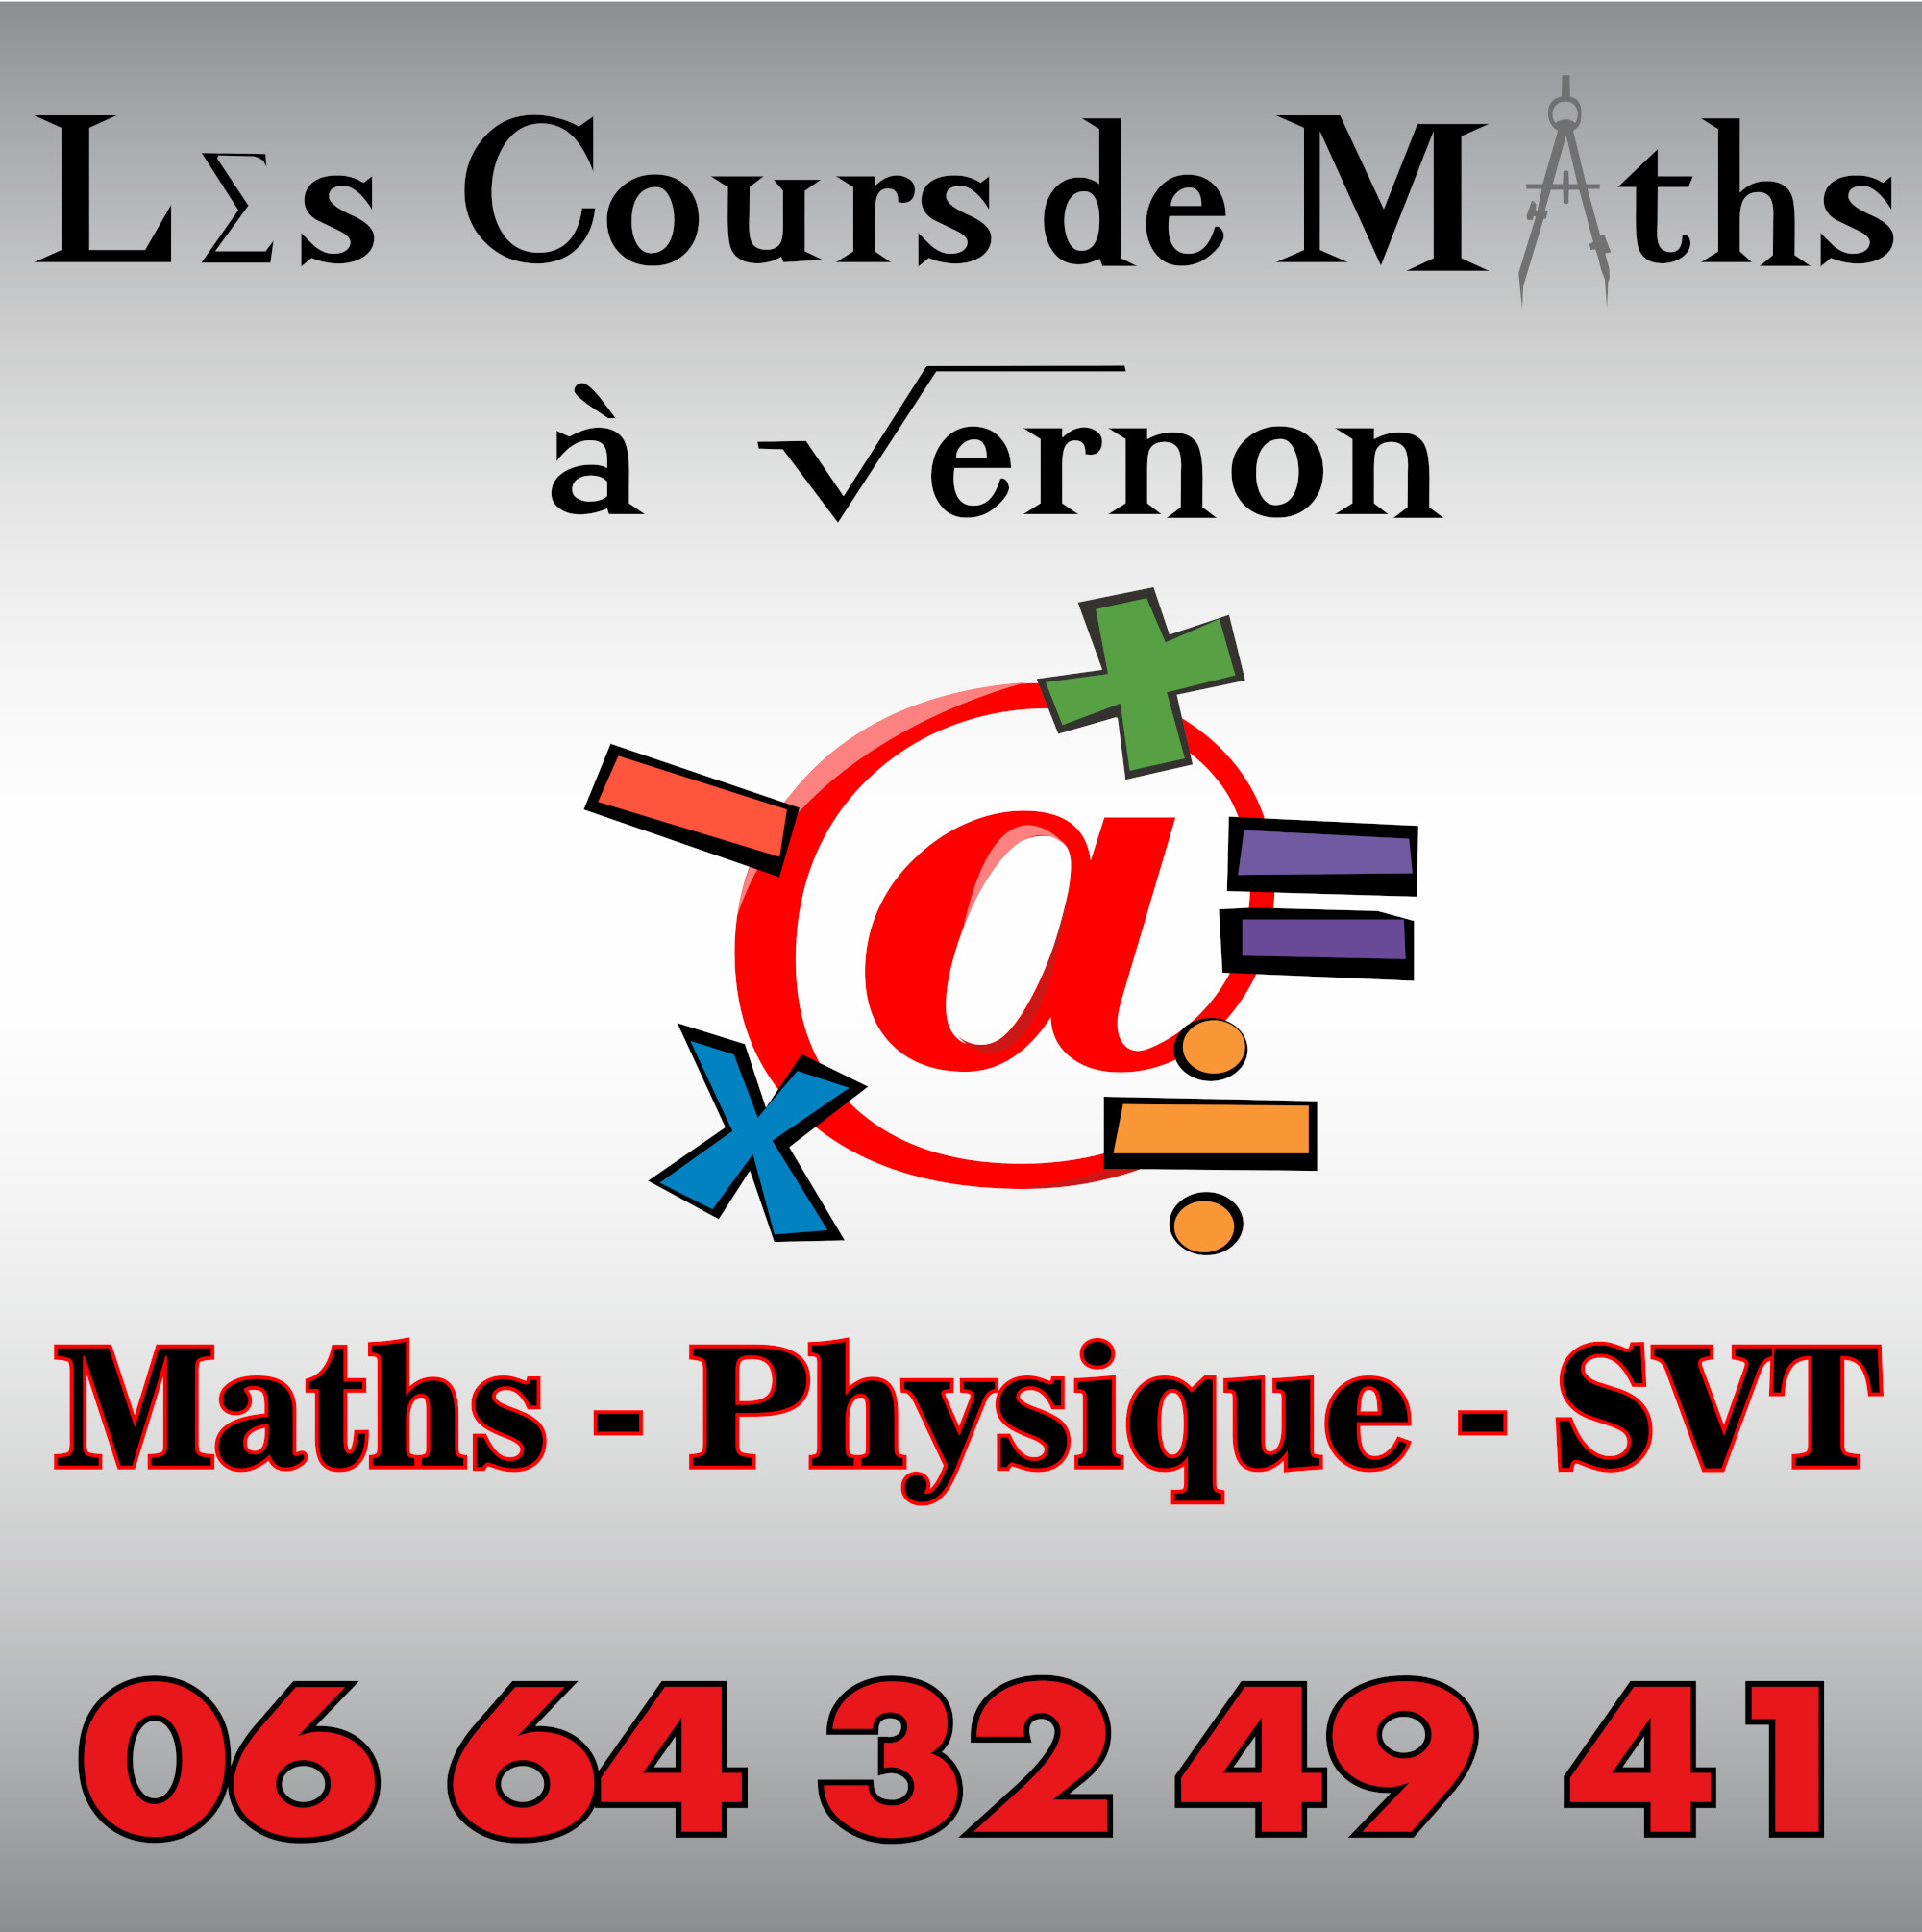 Les cours de maths à Vernon - Maths - Physique - SVT au 06 64 32 49 41